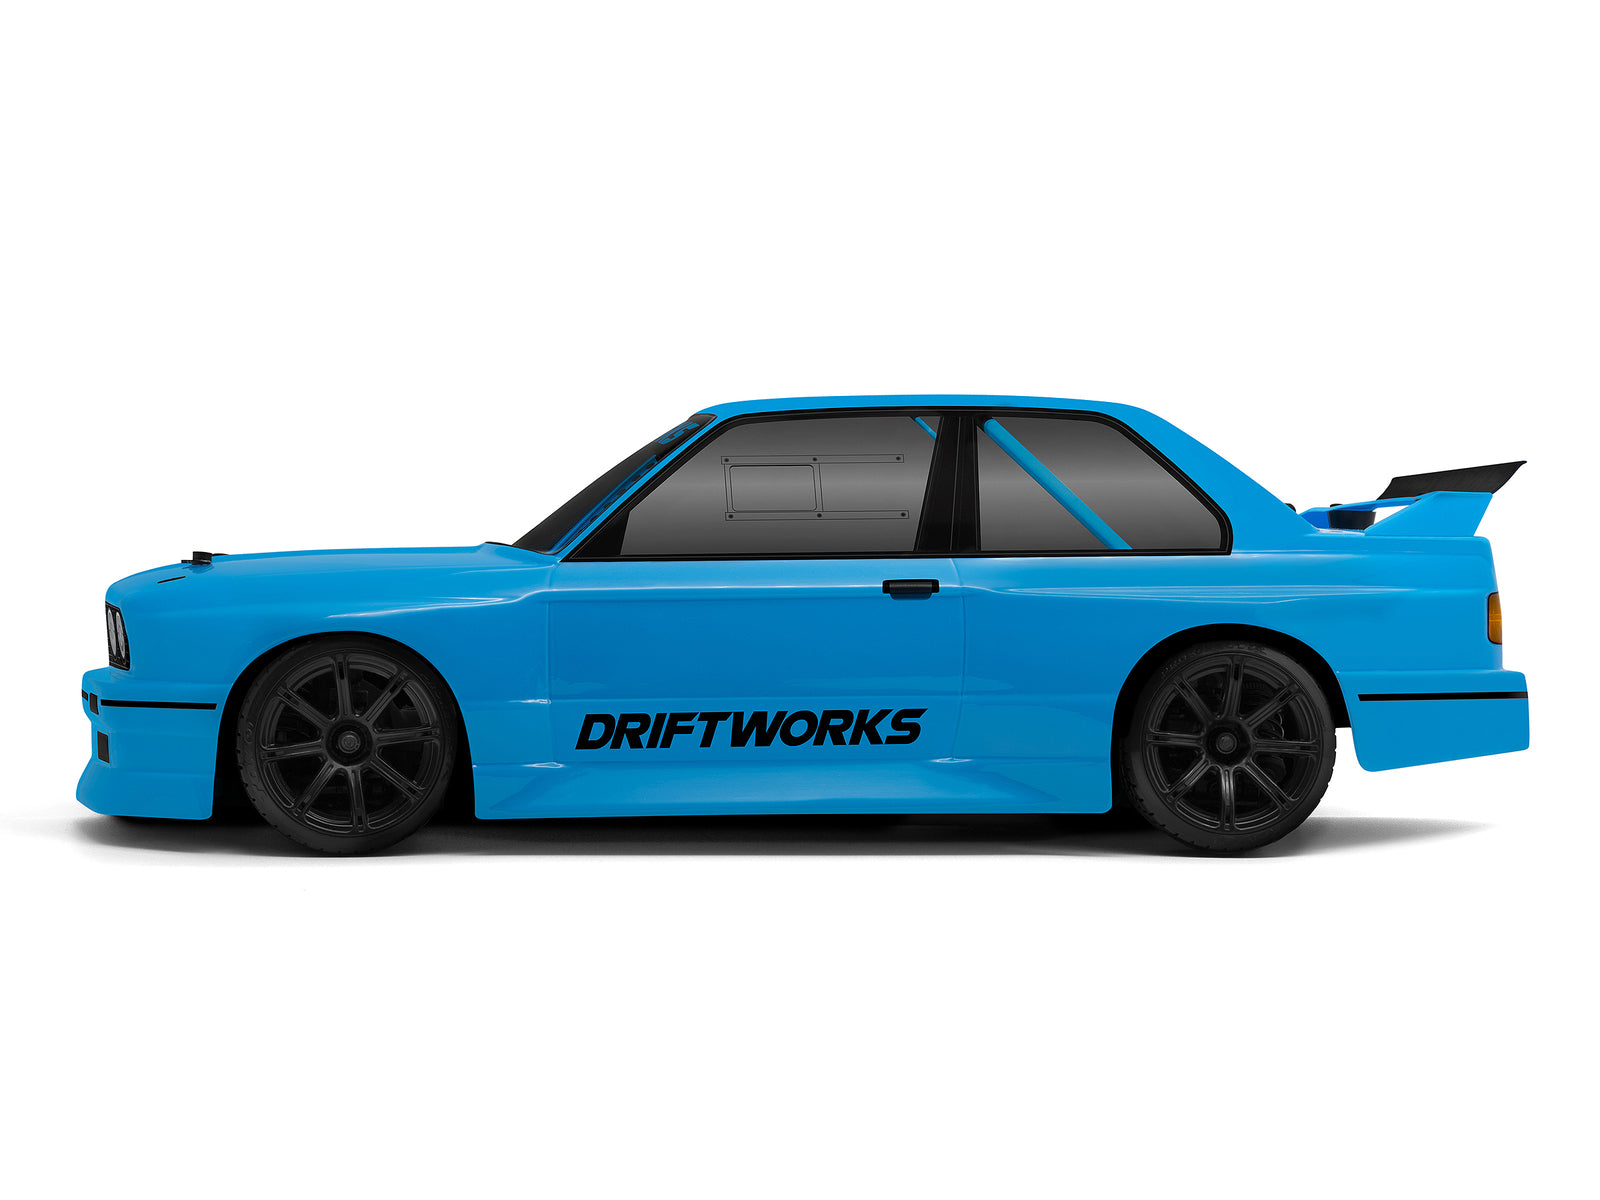 HPI 1/10 Sport 3 Drift BMW E30 Driftworks Item No.: HPI-160422 - [Sunshine-Coast] - HPI - [RC-Car] - [Scale-Model]